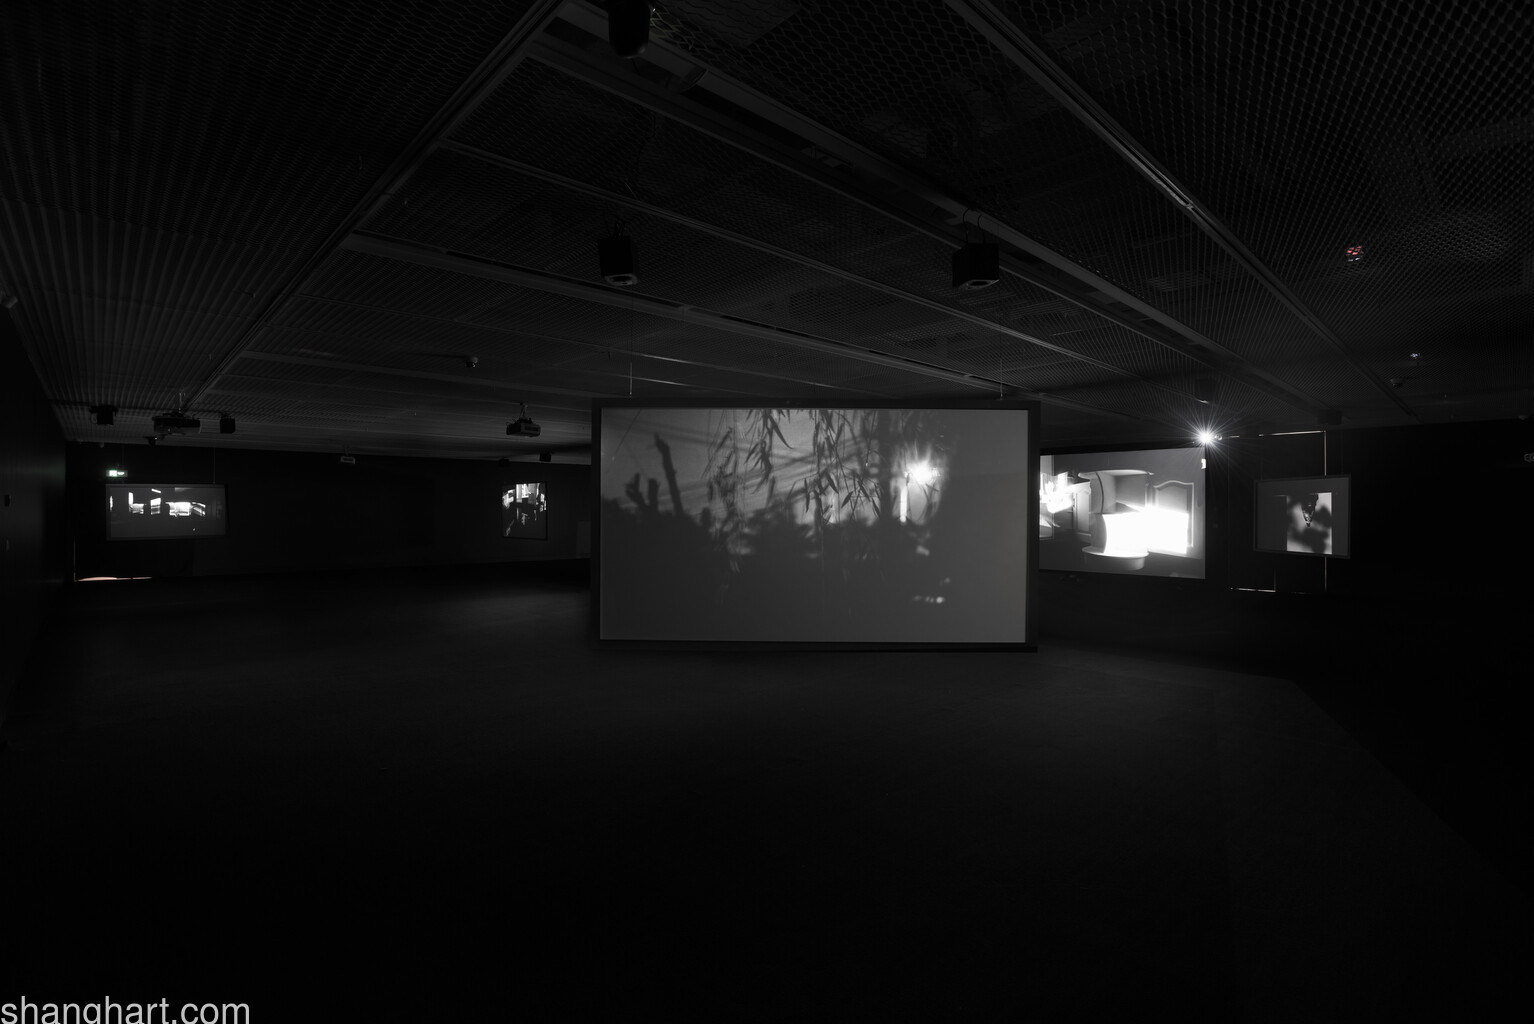 installation view in Fosun art center 2016